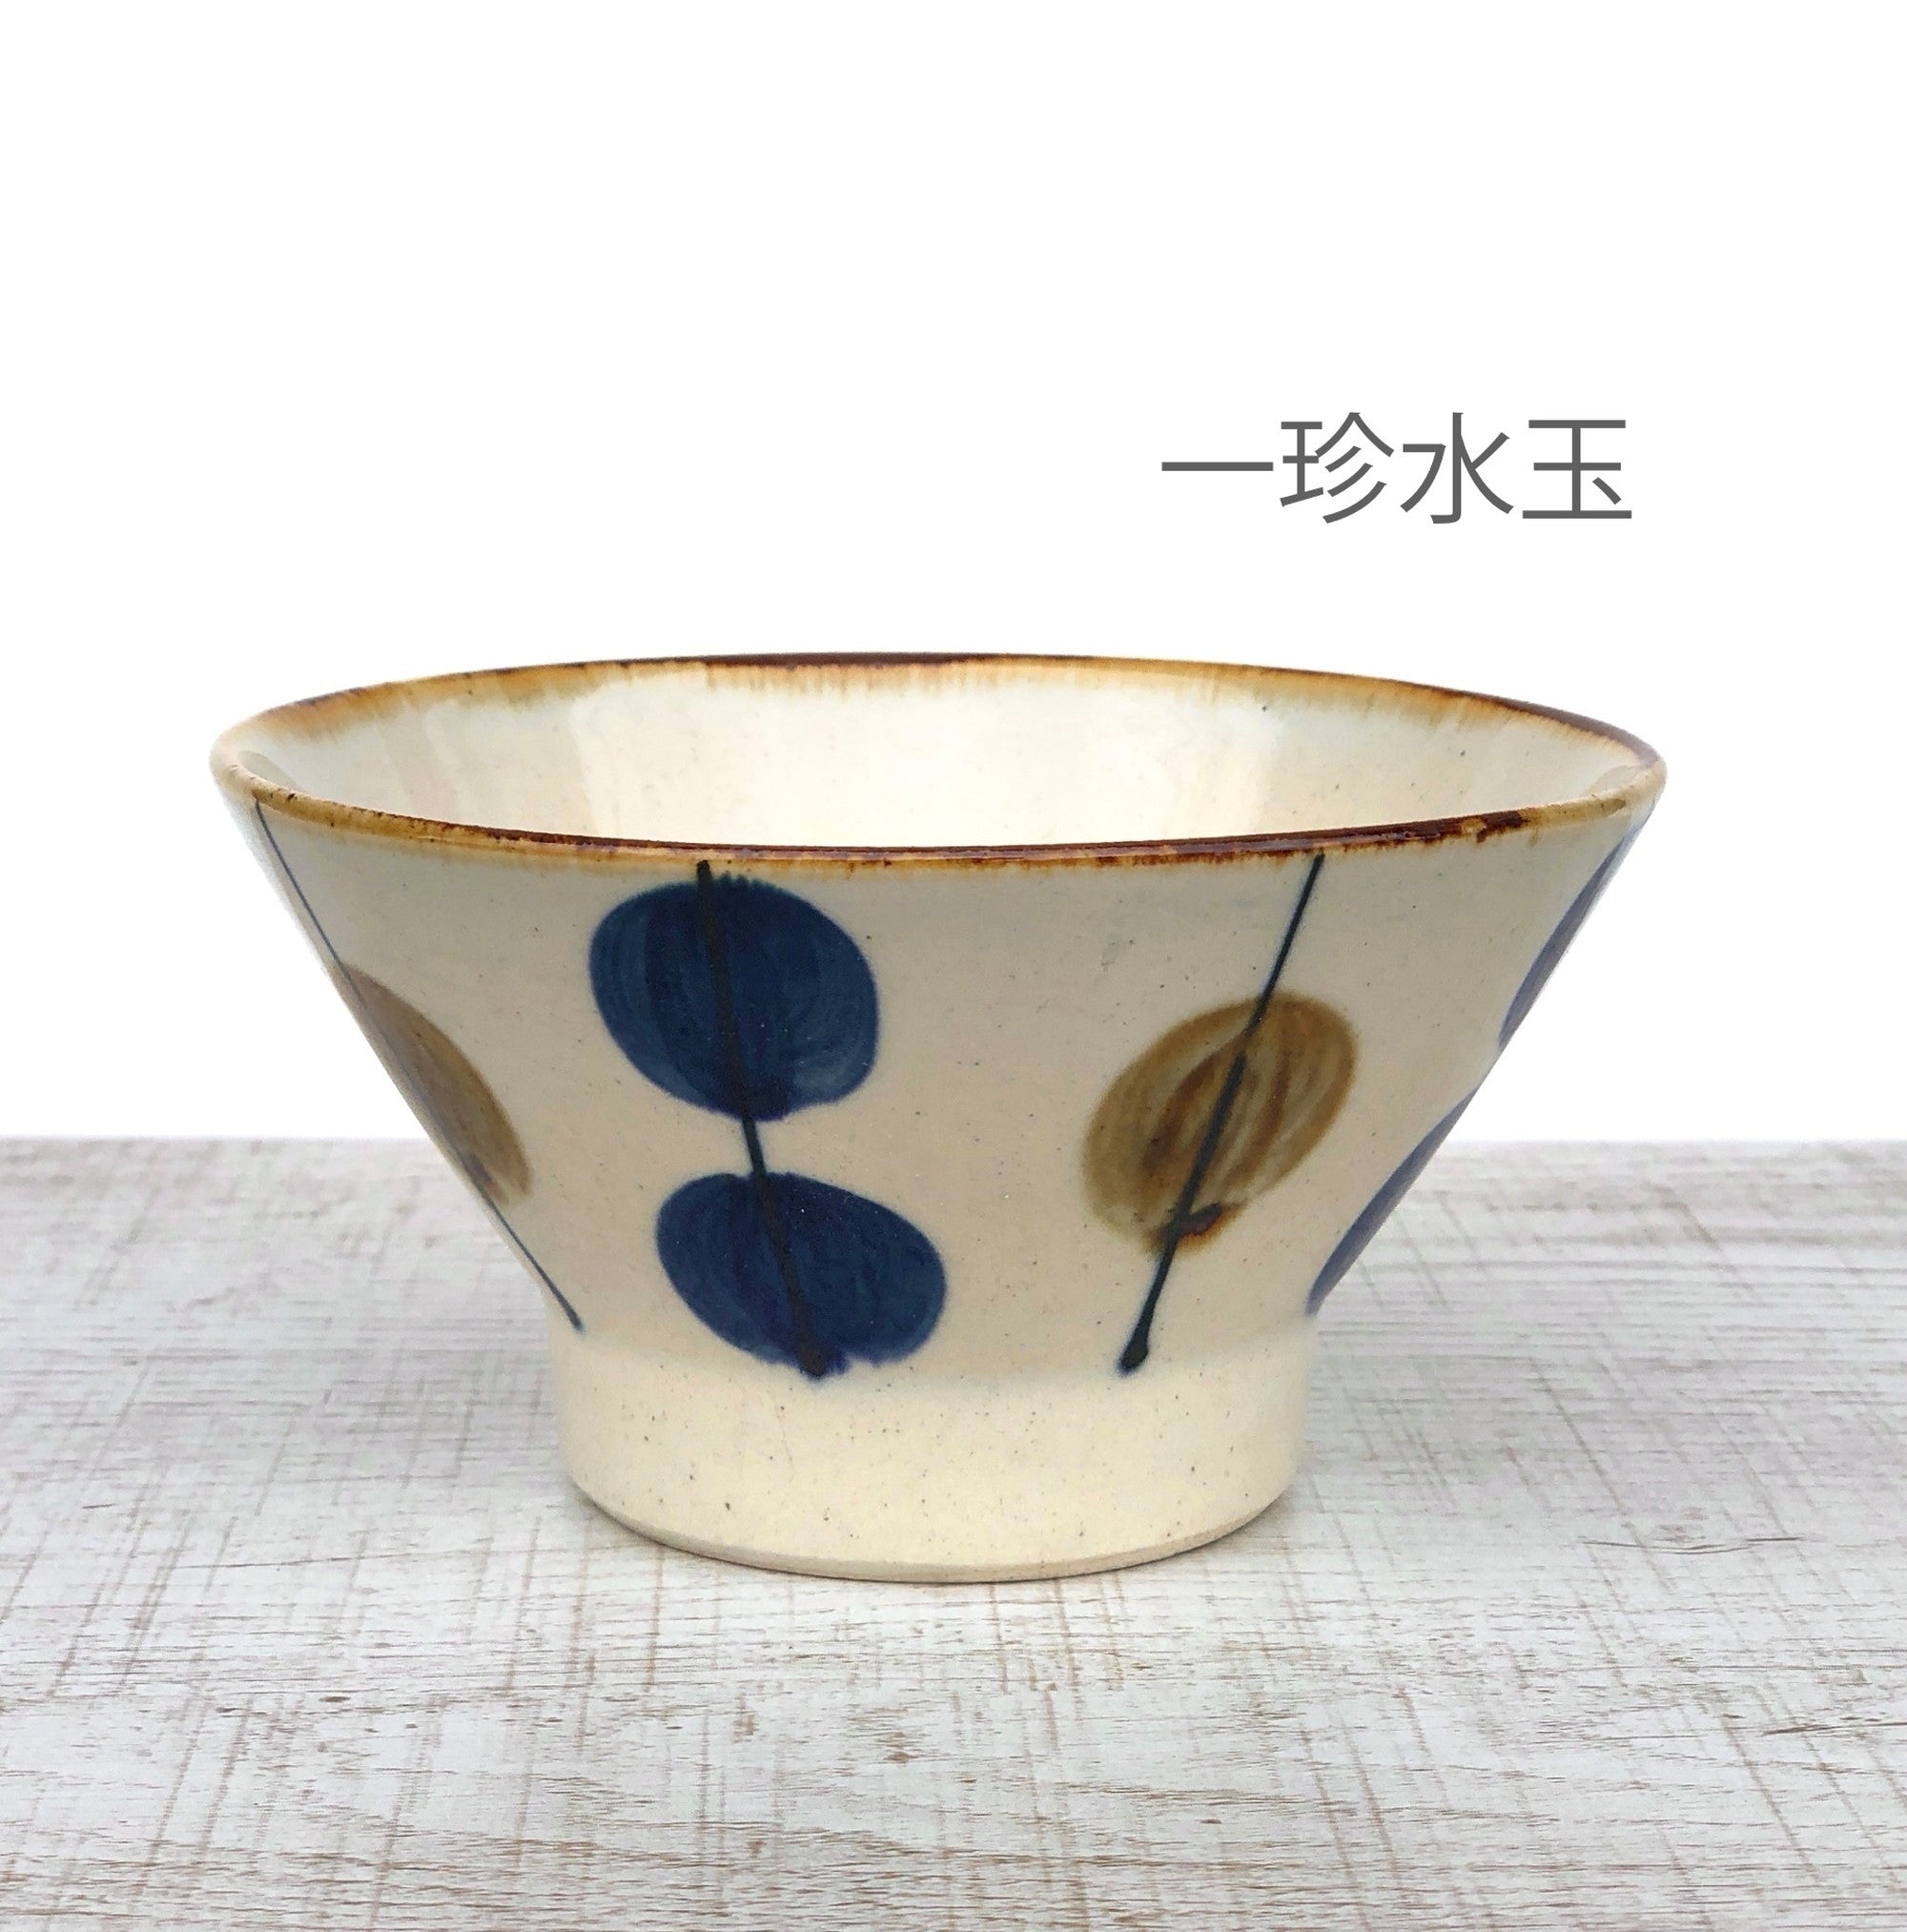 [波佐见烧] [蓝染窑] [靛蓝] [藏碗] 波佐见烧茶碗 Yachimun 风格饭碗日式时尚成人民间艺术